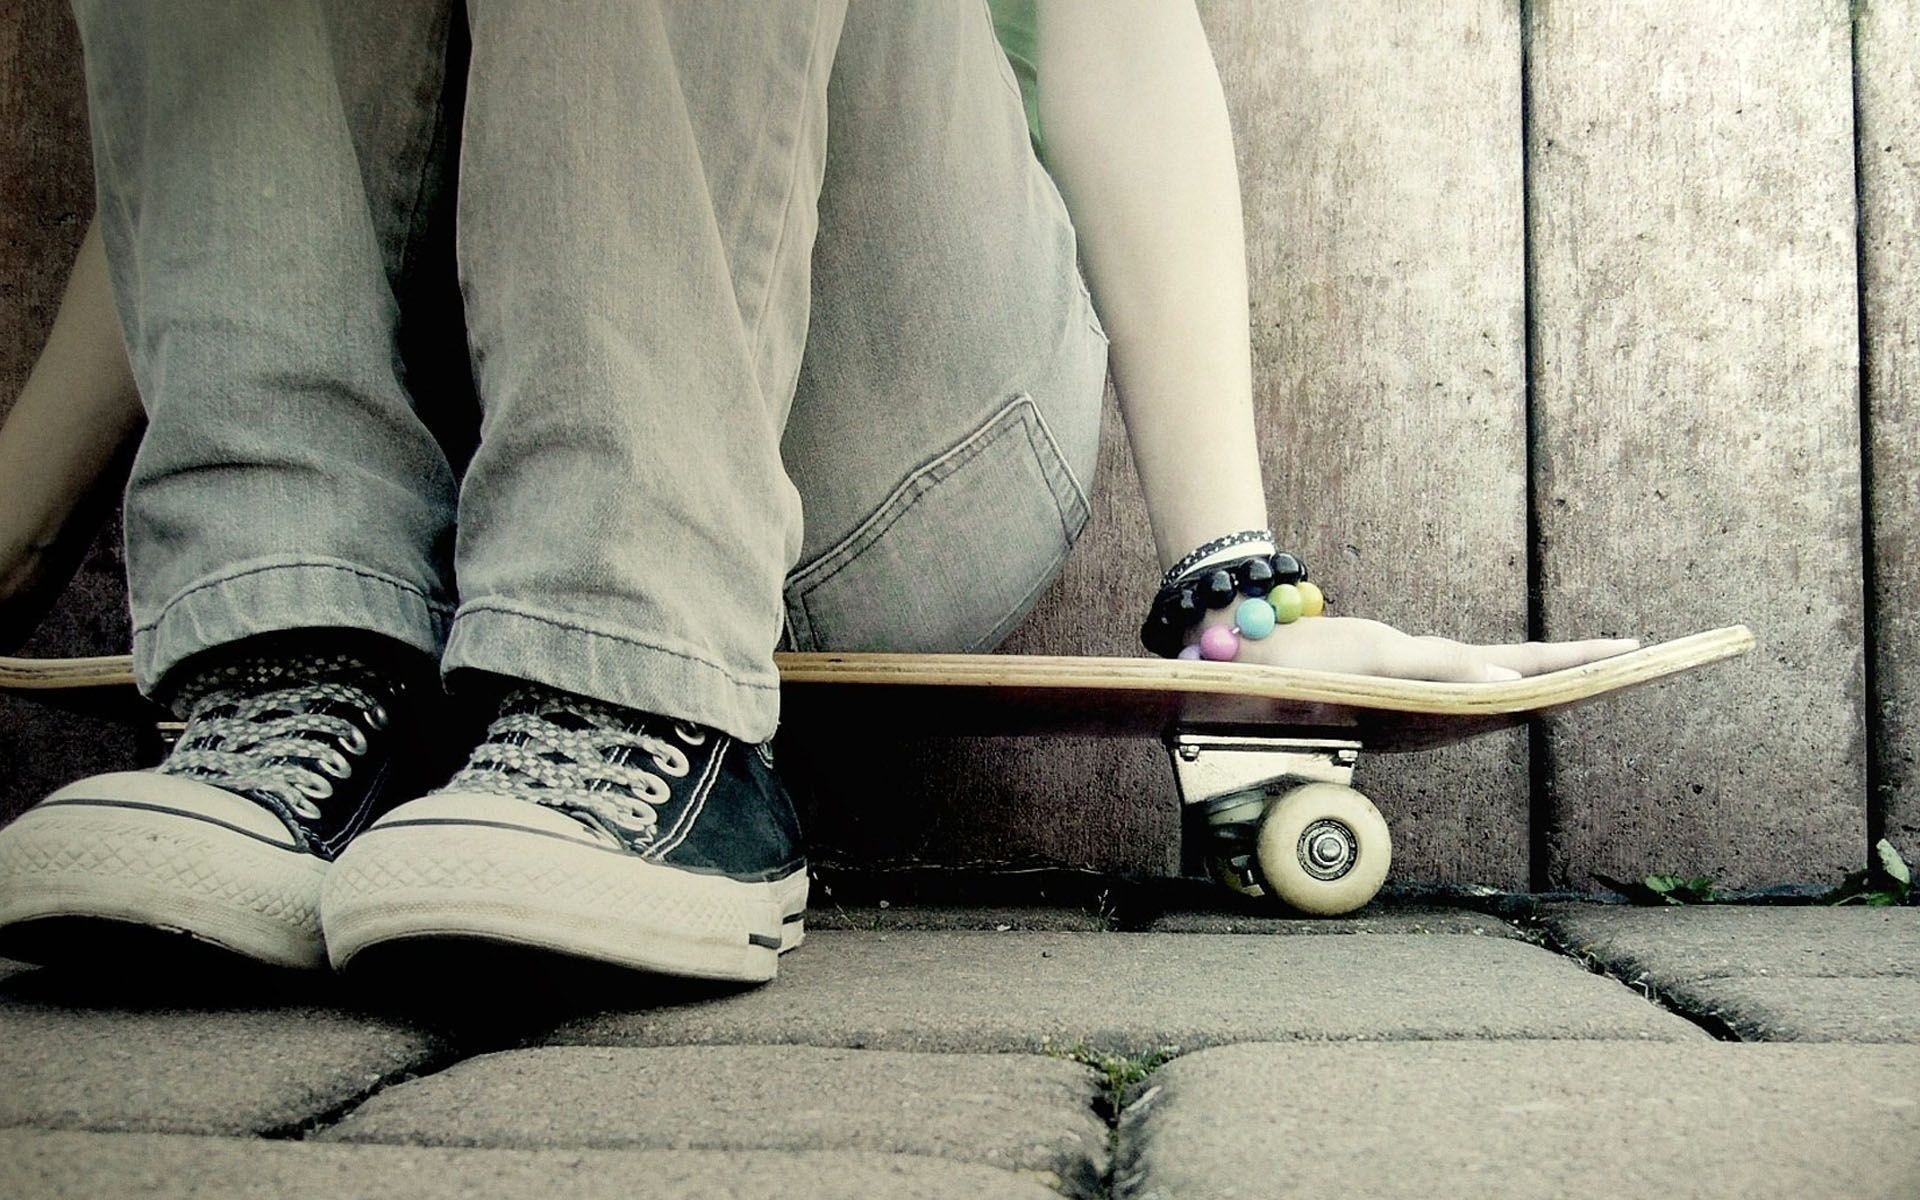 Skateboard wallpapers